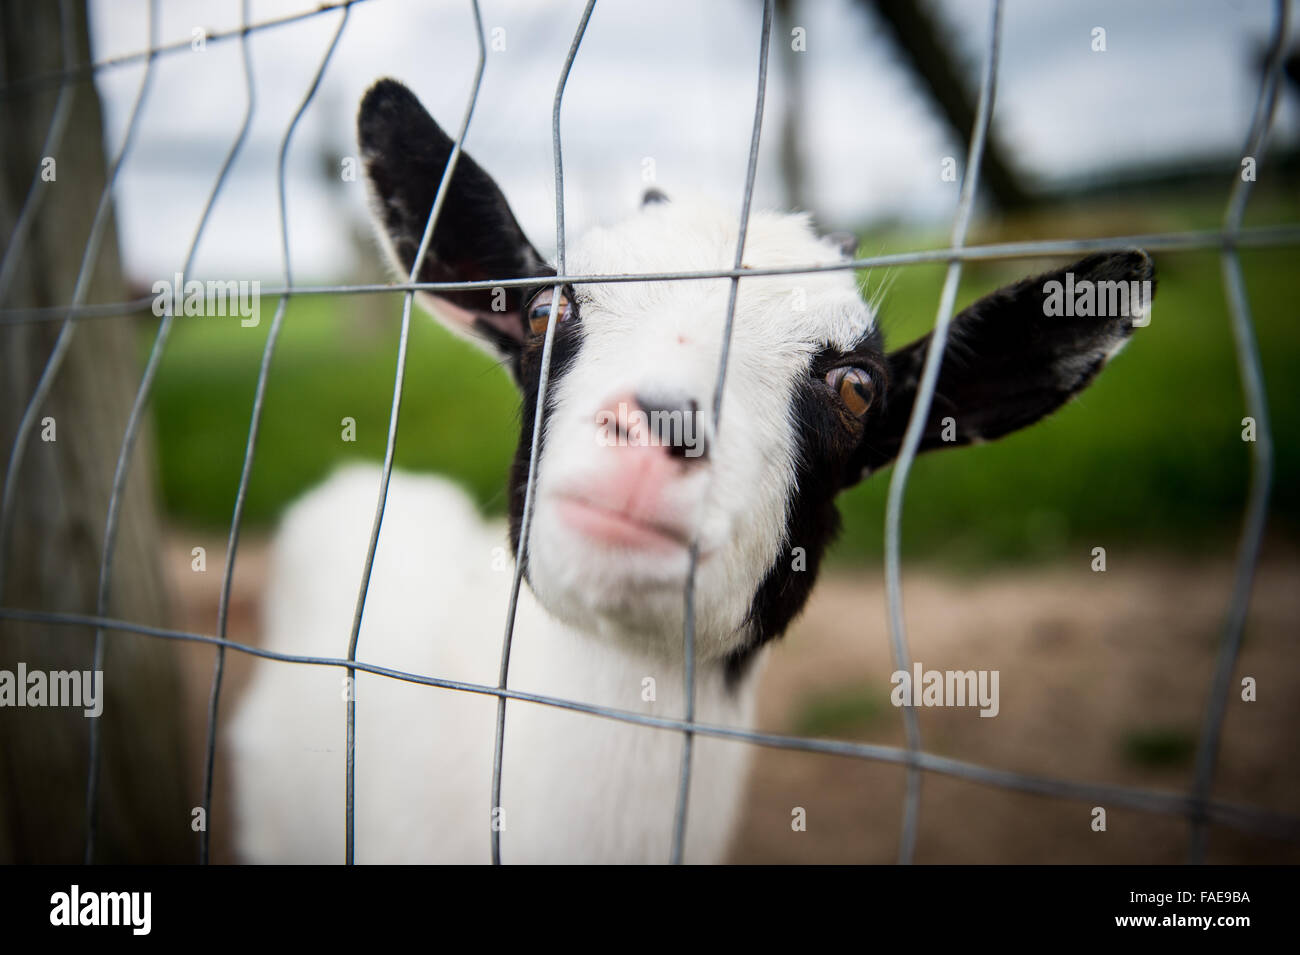 Blanco y negro, cabra bebé pegando su nariz a través de una valla Foto de stock